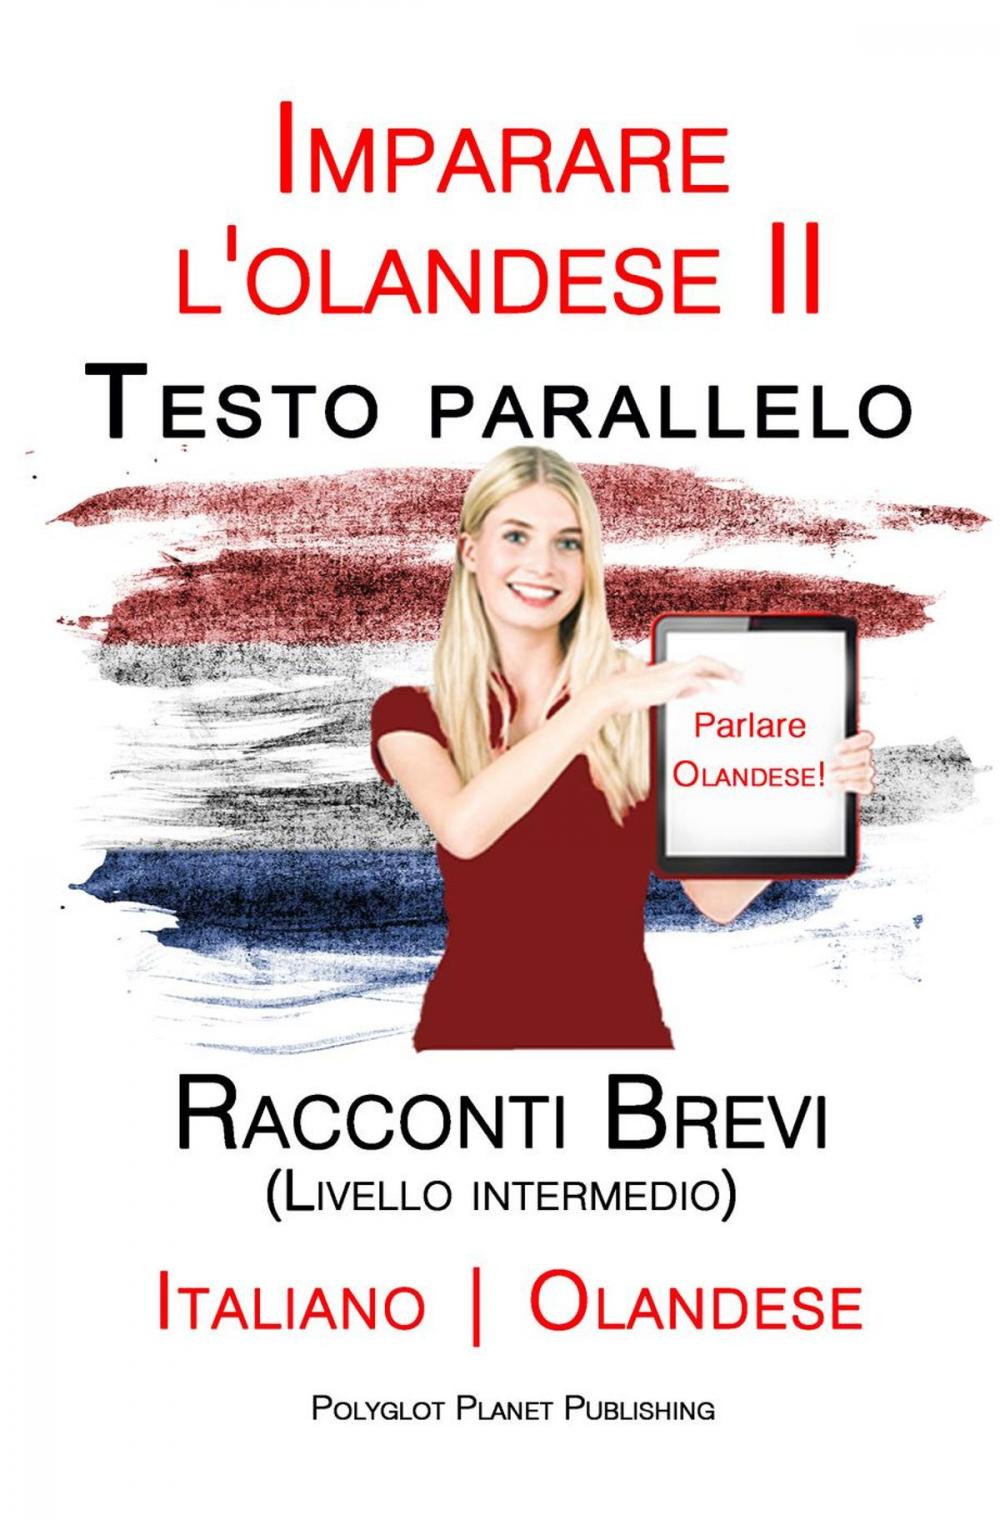 Big bigCover of Imparare l'olandese II - Testo parallelo - Racconti Brevi (Livello intermedio) Italiano - Olandese